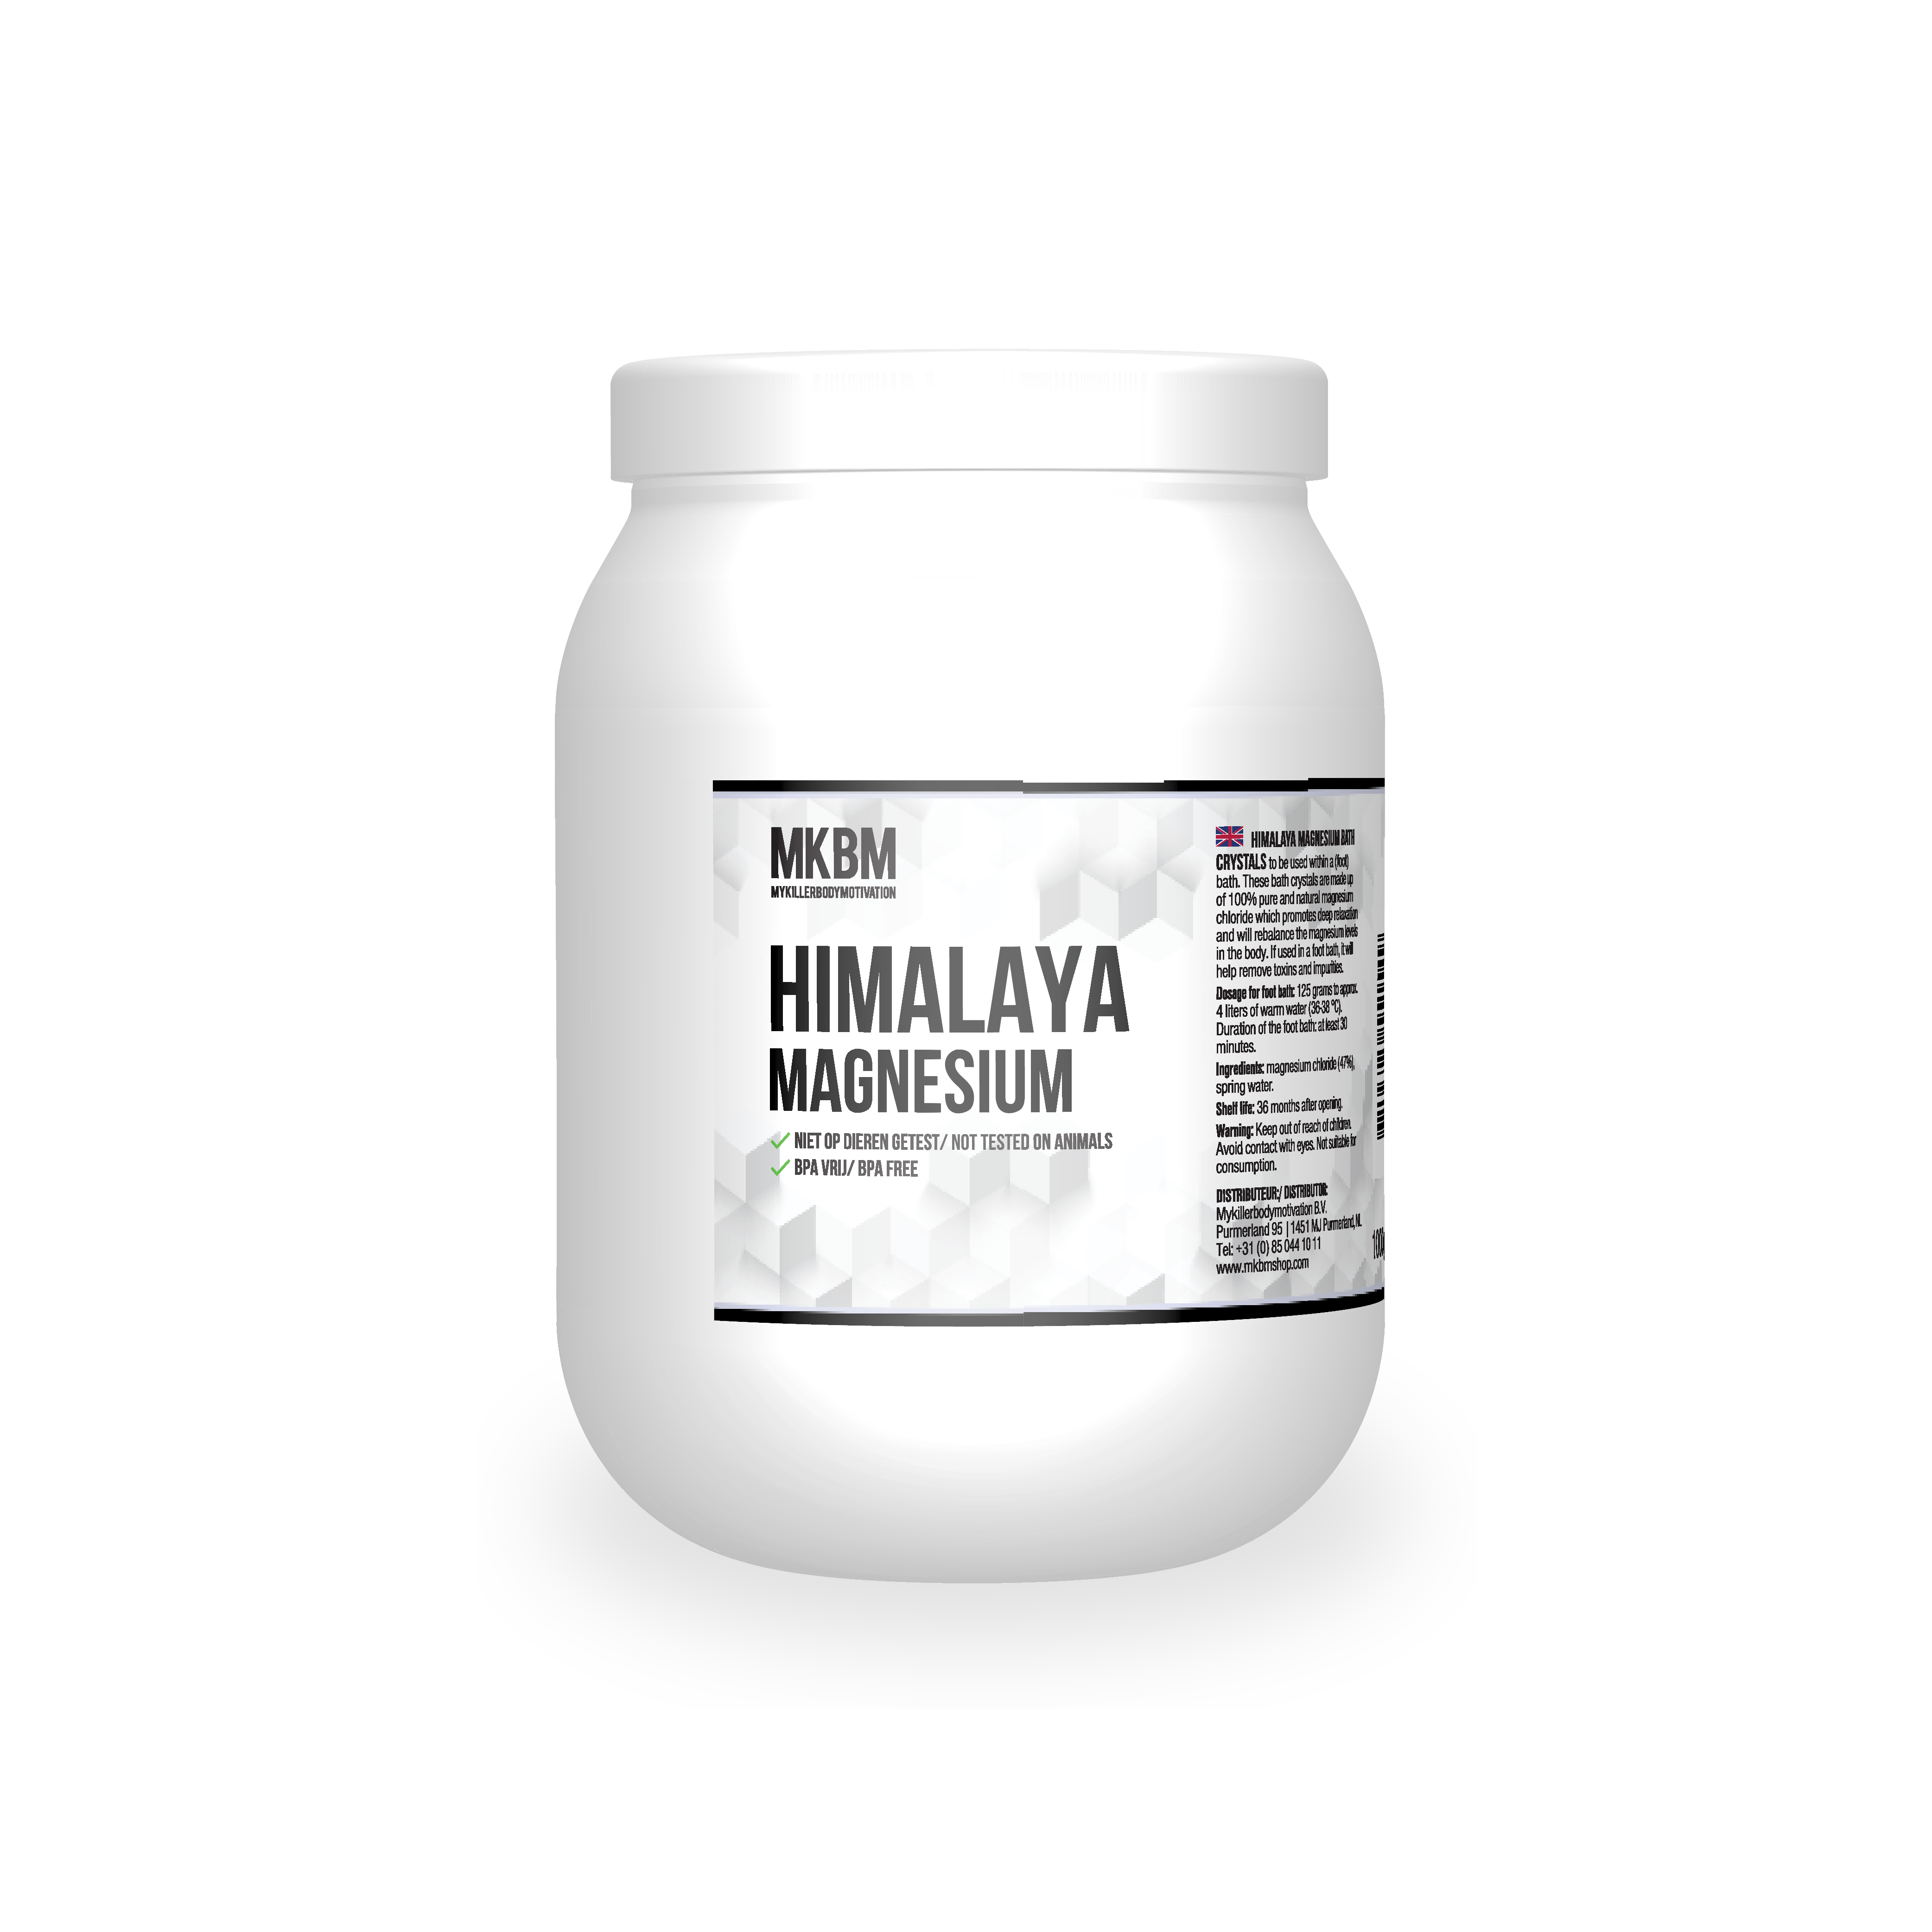 Himalaya Magnesium Bath Salt - MKBM